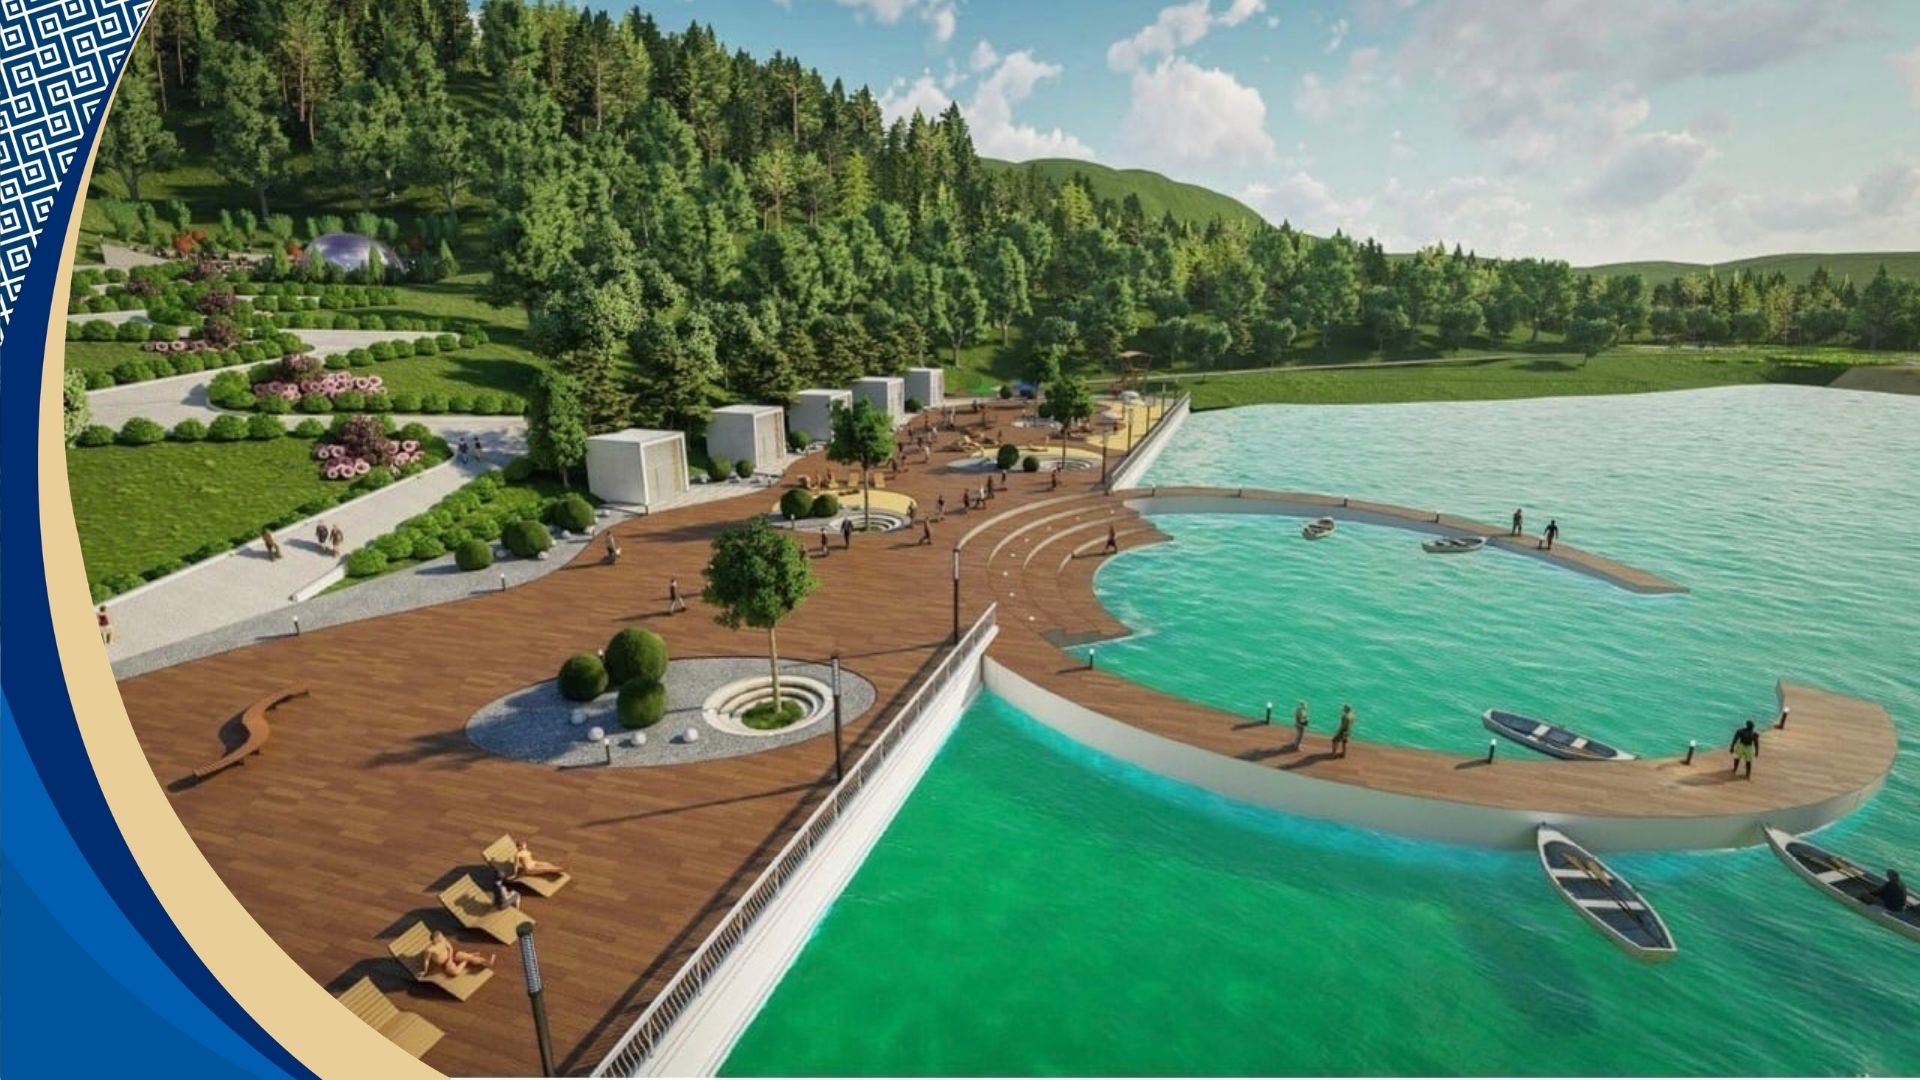 Развитие рекреационная зона. Старое озеро Кисловодск. Кисловодск озеро 2021. Кисловодск городское озеро. Озеро в Кисловодске.